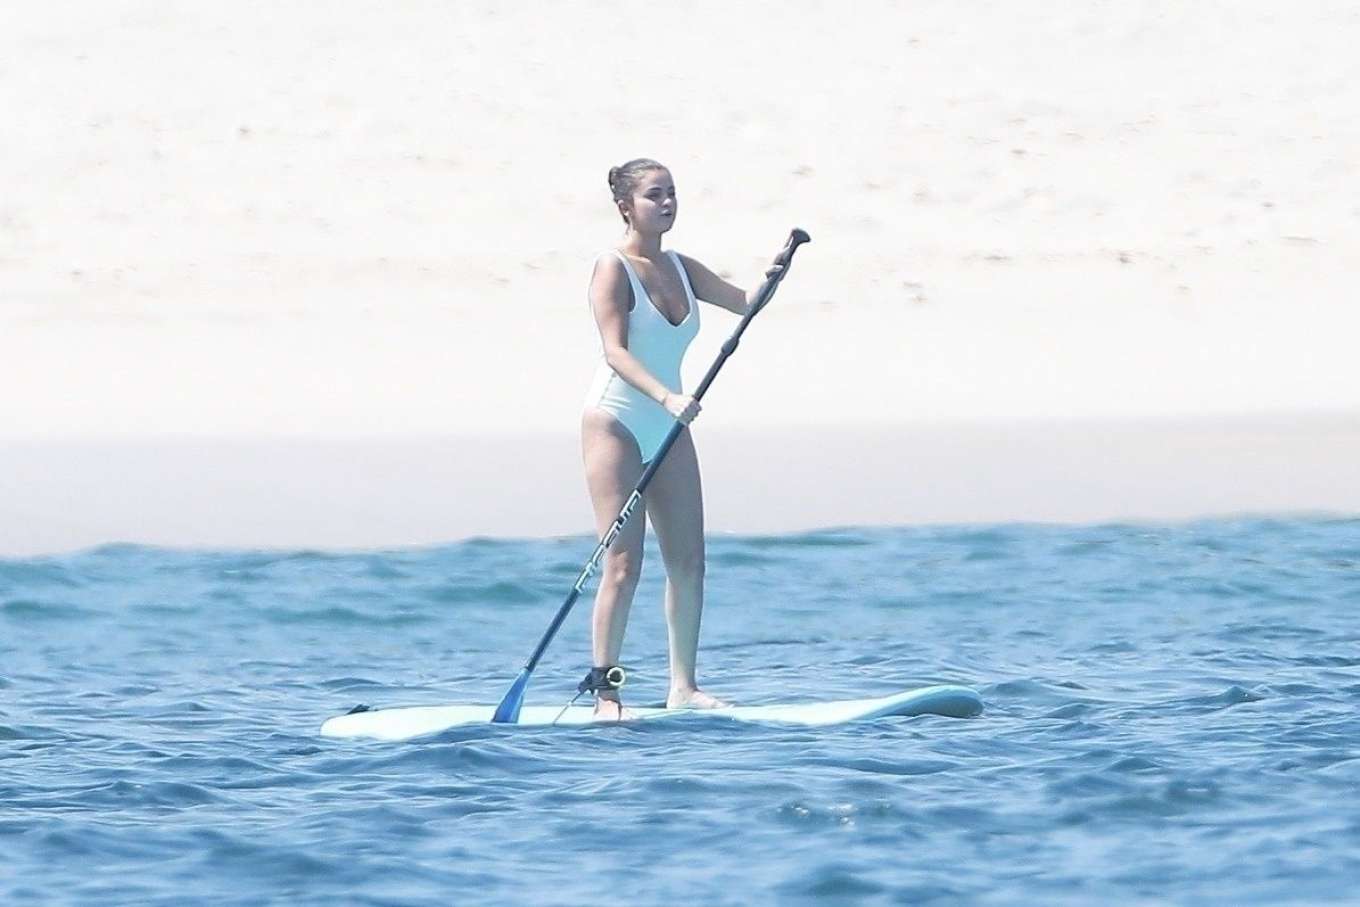 Selena Gomez 2019 : Selena Gomez in White Swimsuit Paddleboarding-01